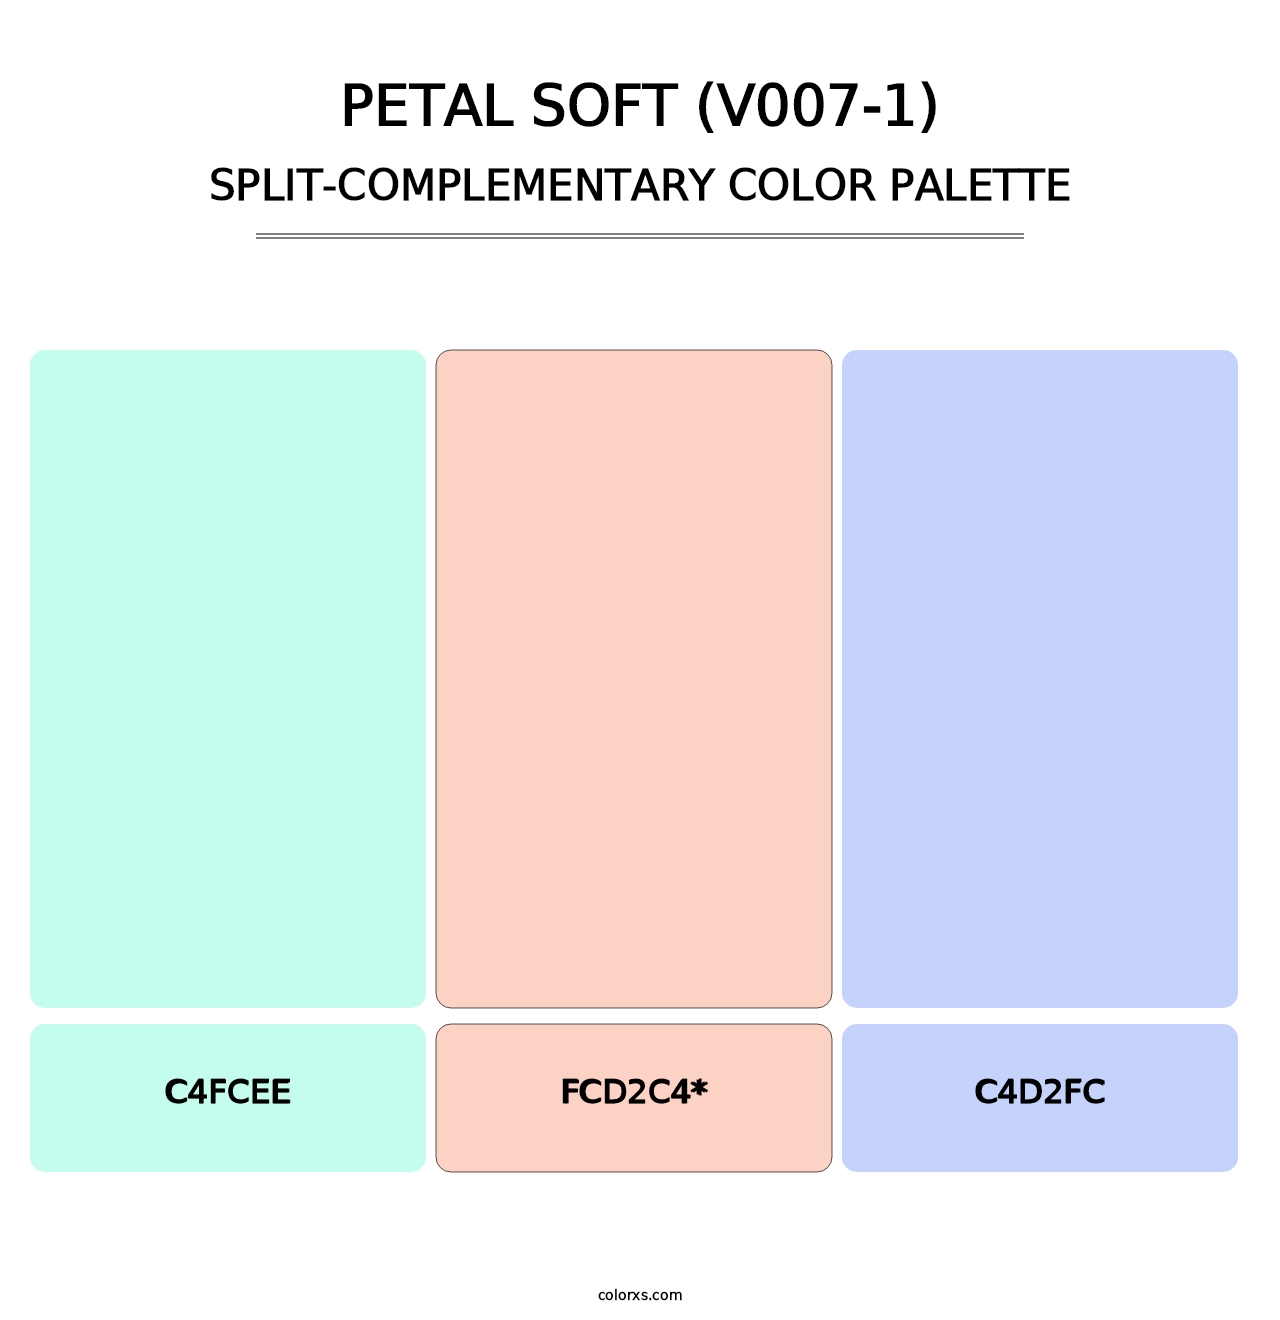 Petal Soft (V007-1) - Split-Complementary Color Palette